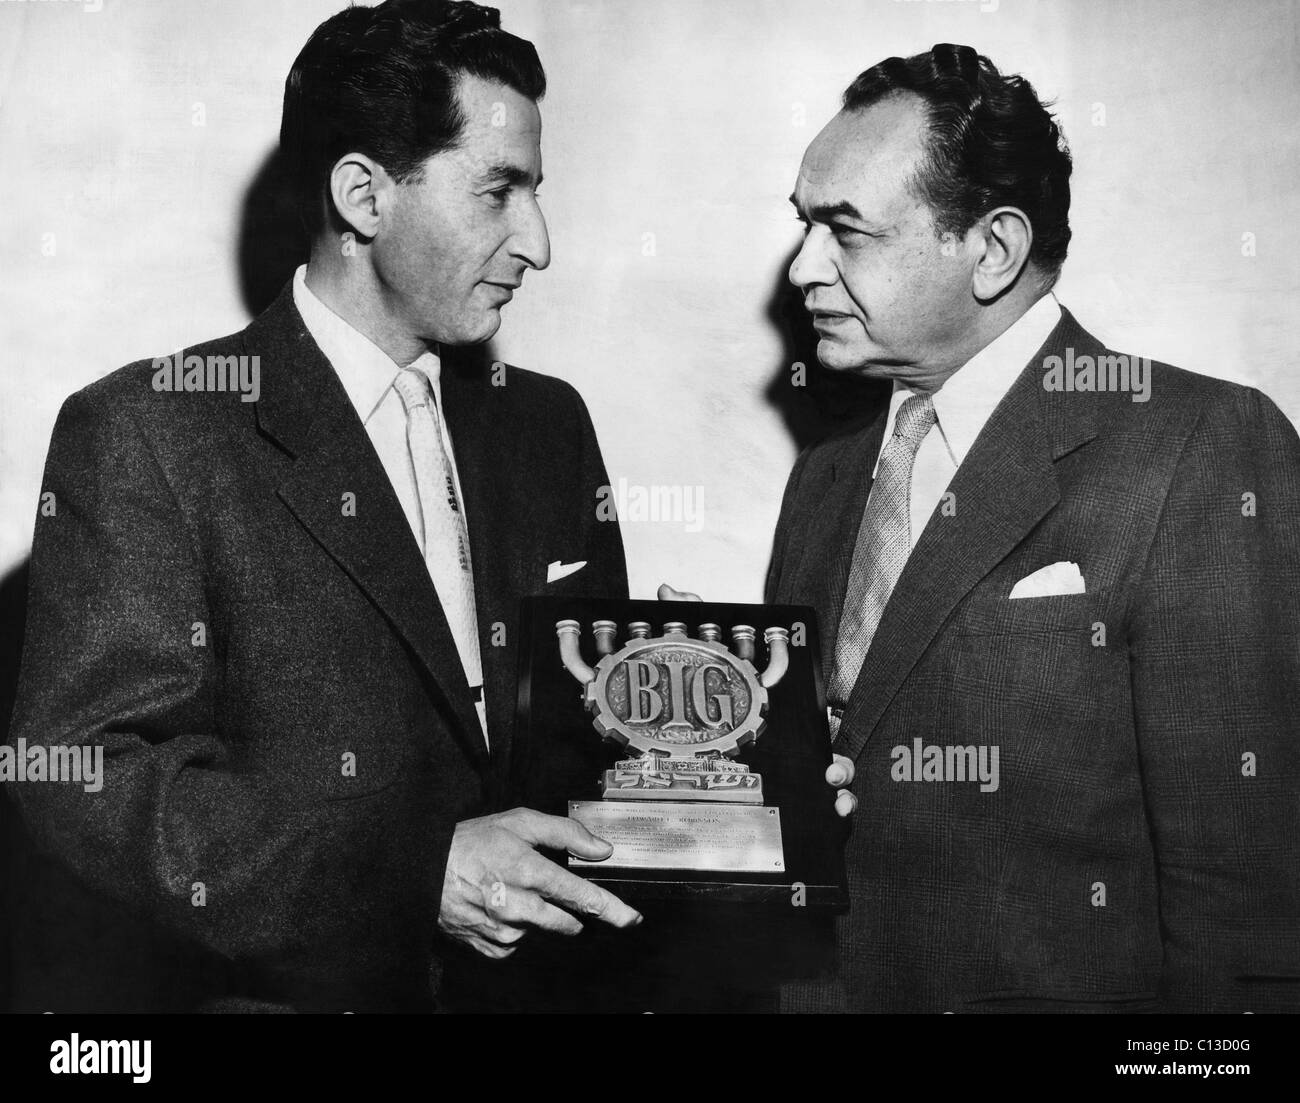 Harry Beilin, west coast consul per lo Stato di Israele, presenta Edward G. Robinson con la grande ruota award per il suo sostegno di legami per Israele campagna, 1953 Foto Stock